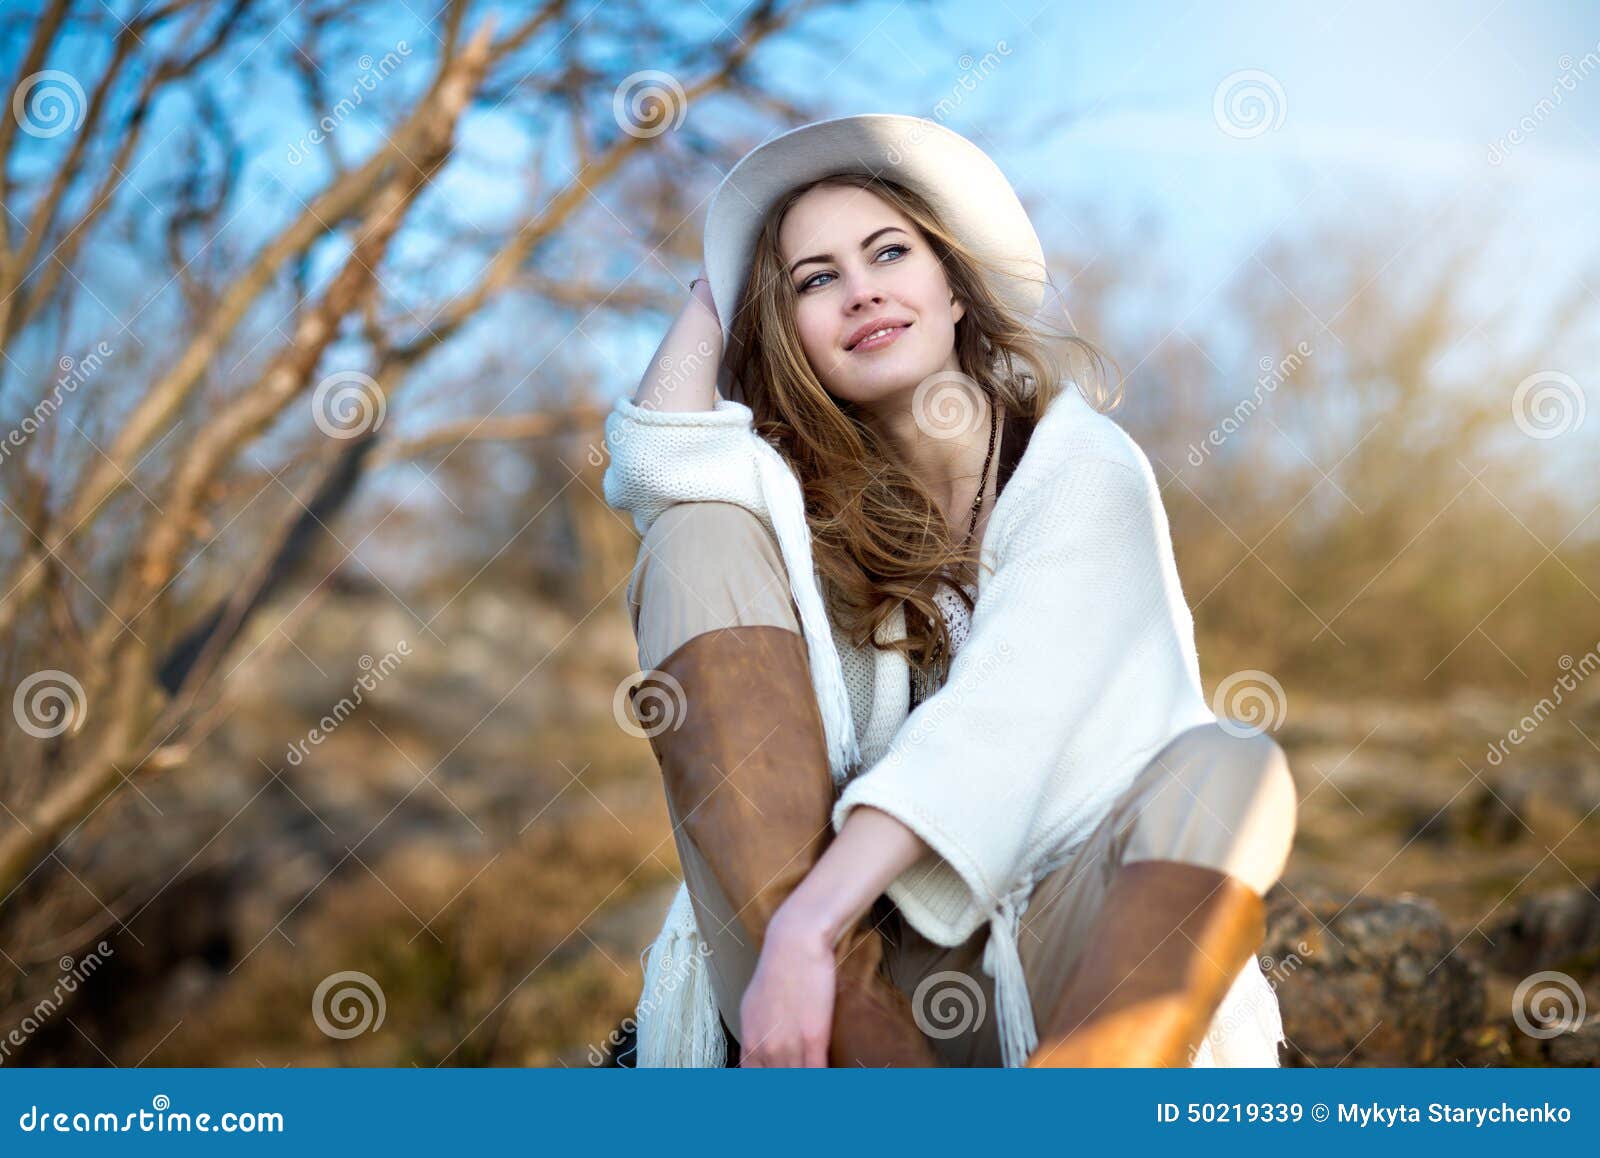 beautiful smiling woman relaxing outdoors